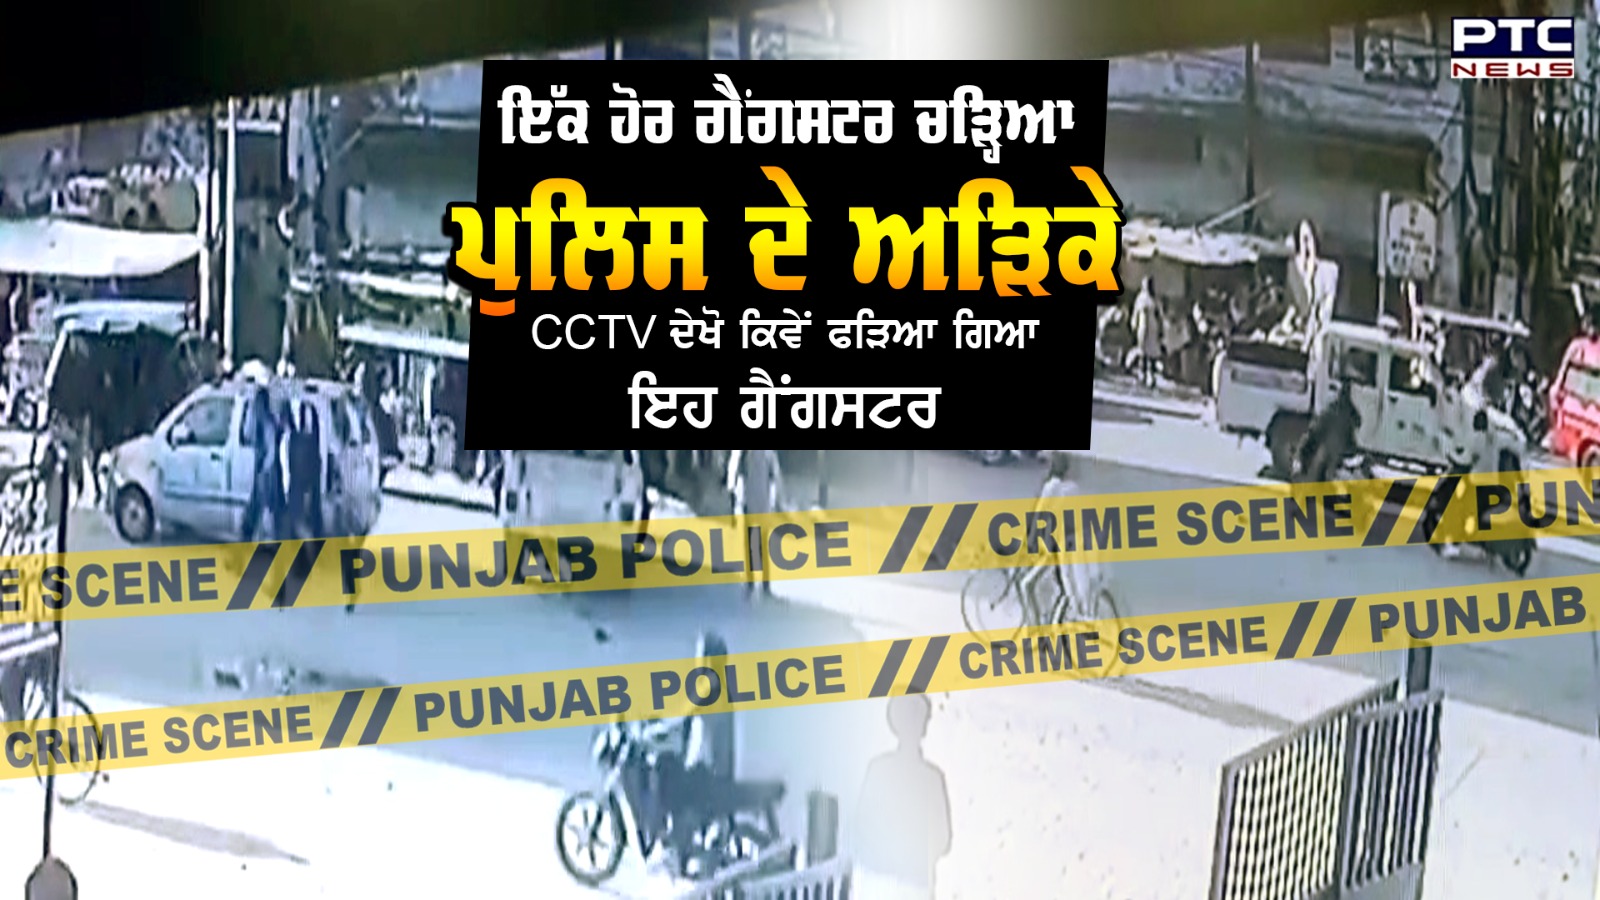 ਗੈਂਗਸਟਰ Gurpreet Singh Goli ਚੜ੍ਹਿਆ Police ਦੇ ਅੜਿਕੇ, CCTV ਦੇਖੋ ਕਿਵੇਂ ਫੜਿਆ ਗਿਆ